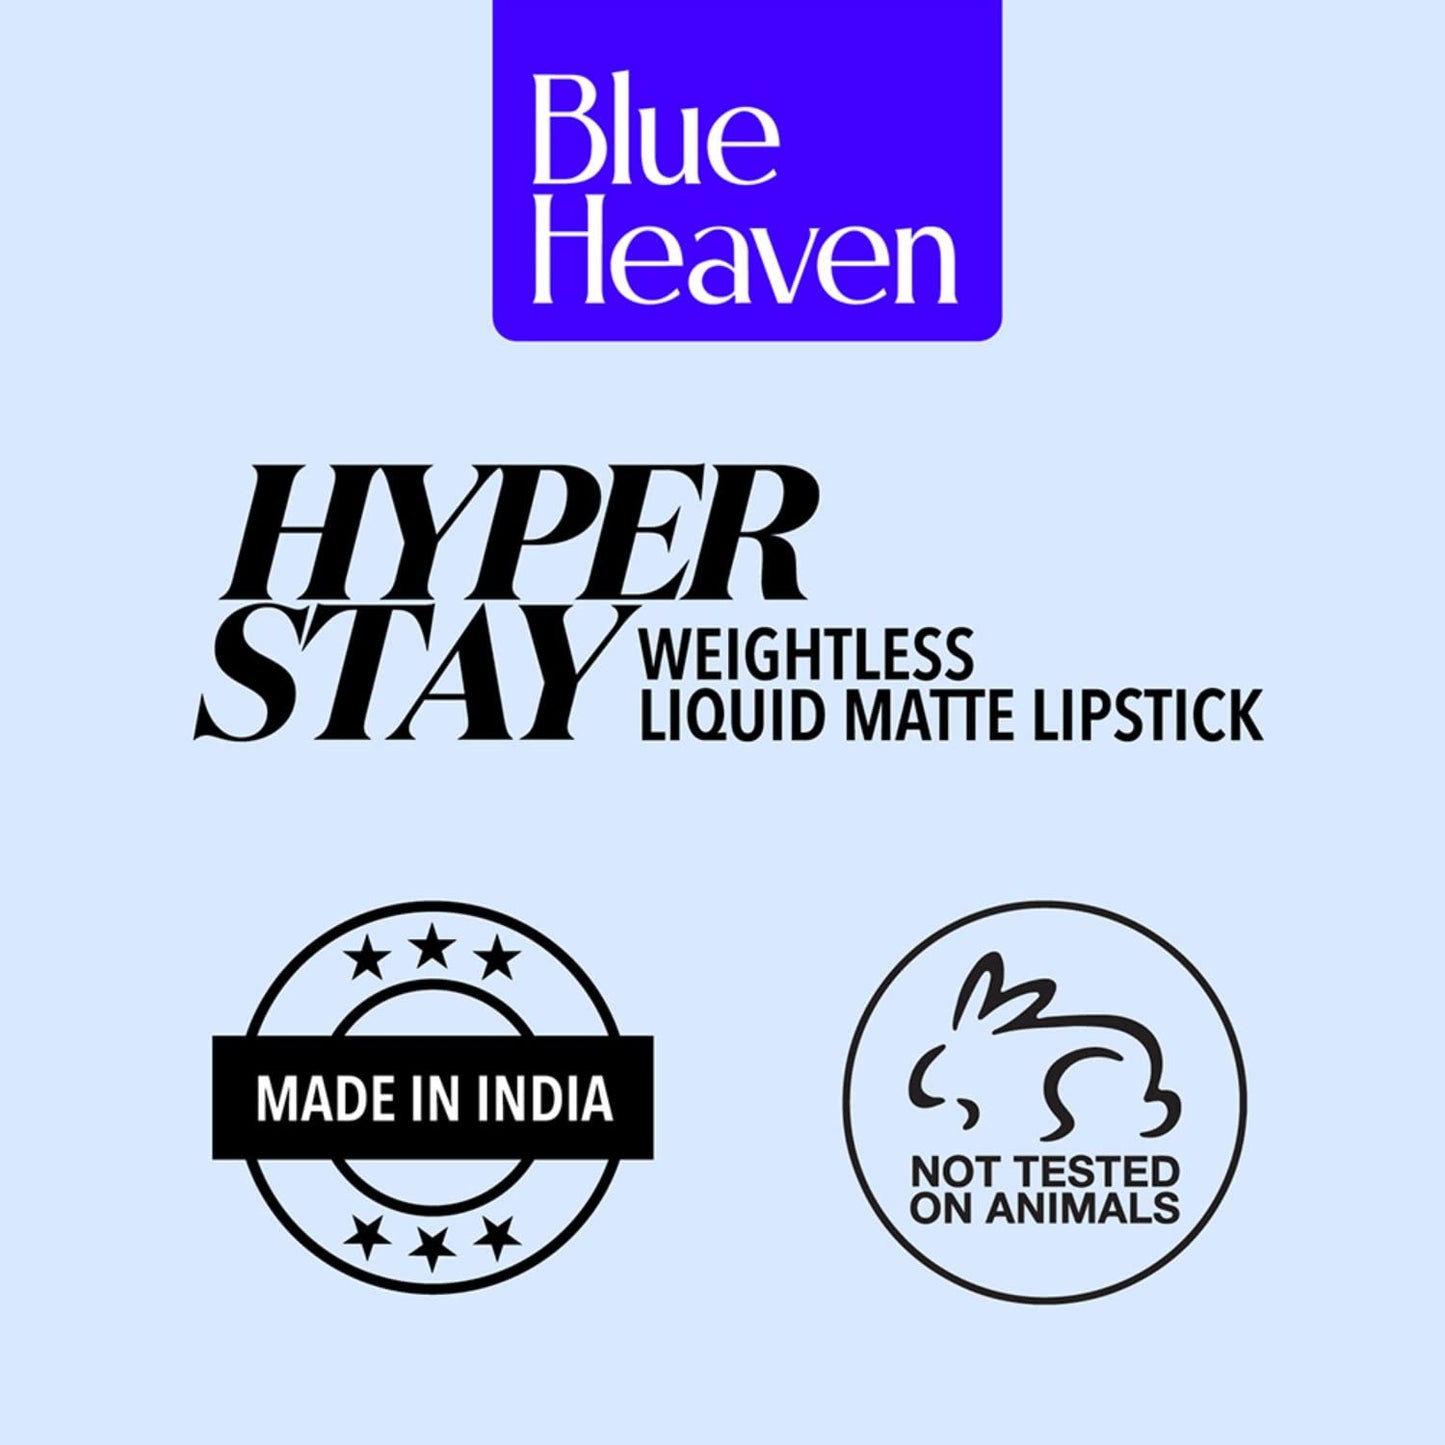 Blue Heaven Hyperstay Weightless Liquid Matte Lipstick, Smudgeproof, Transfer proof, Alert Red, 6ml